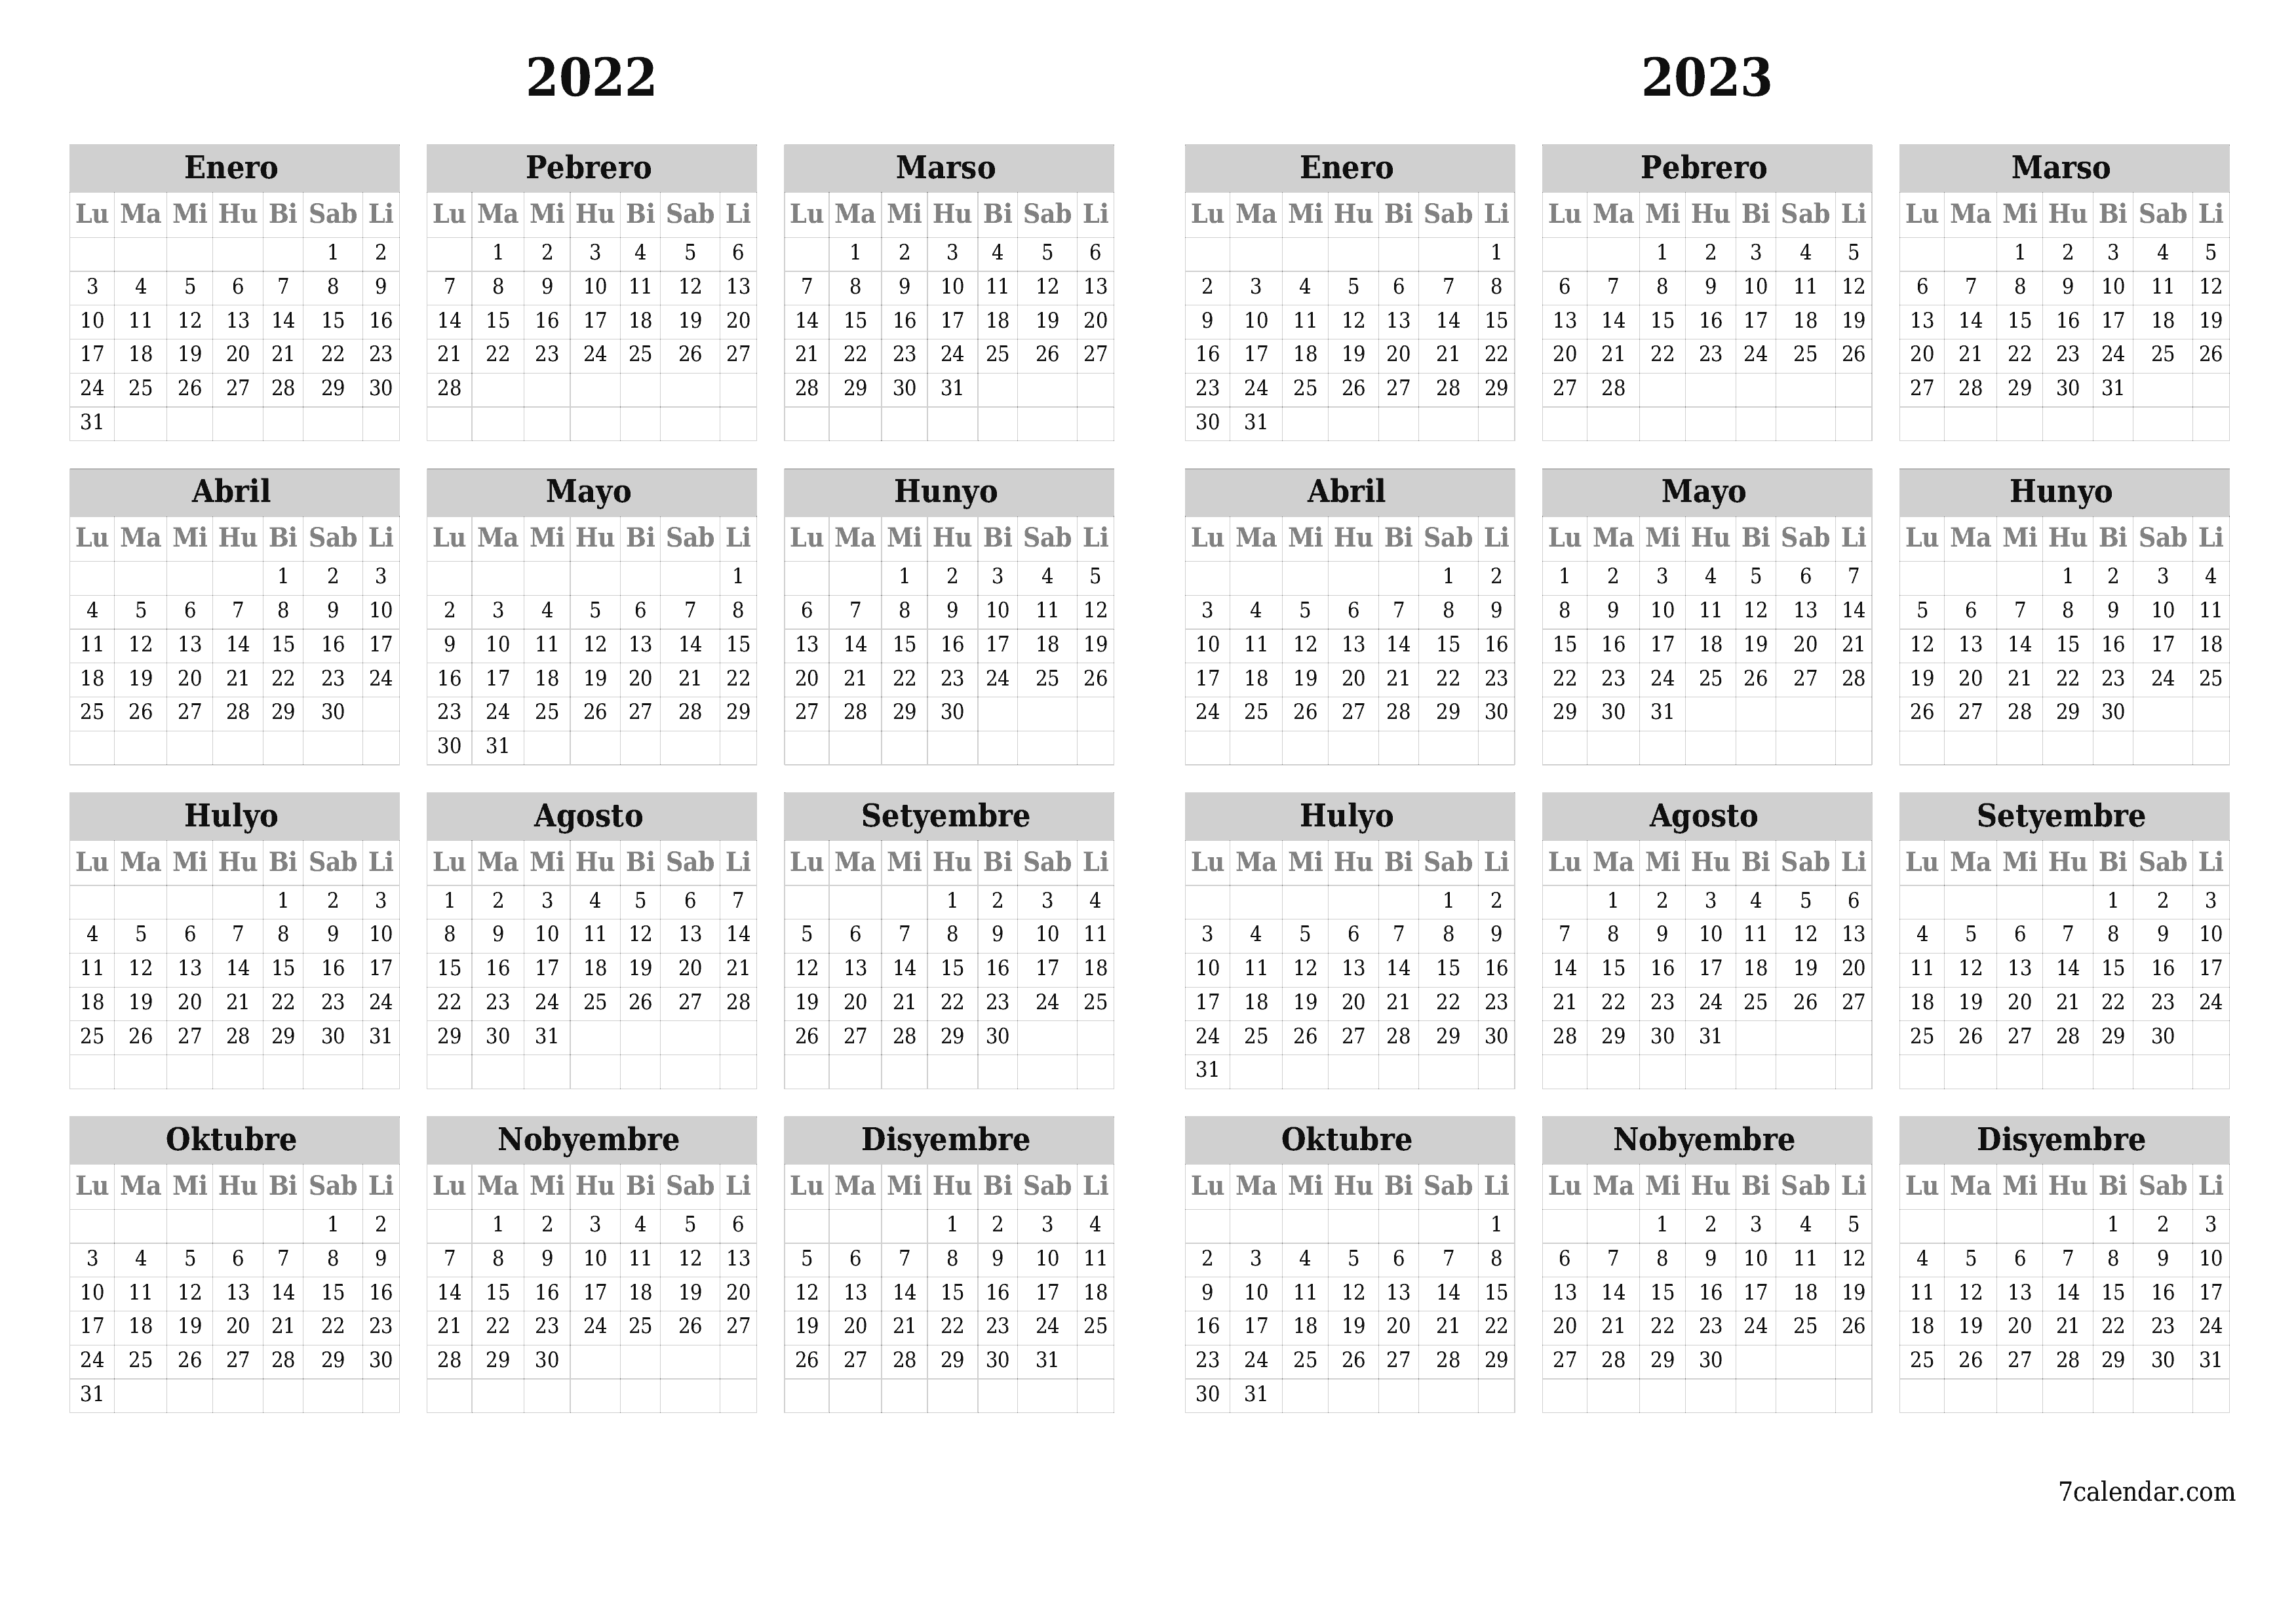 napi-print na sa dingding template ng libreng pahalang Taunan kalendaryo Setyembre (Set) 2022